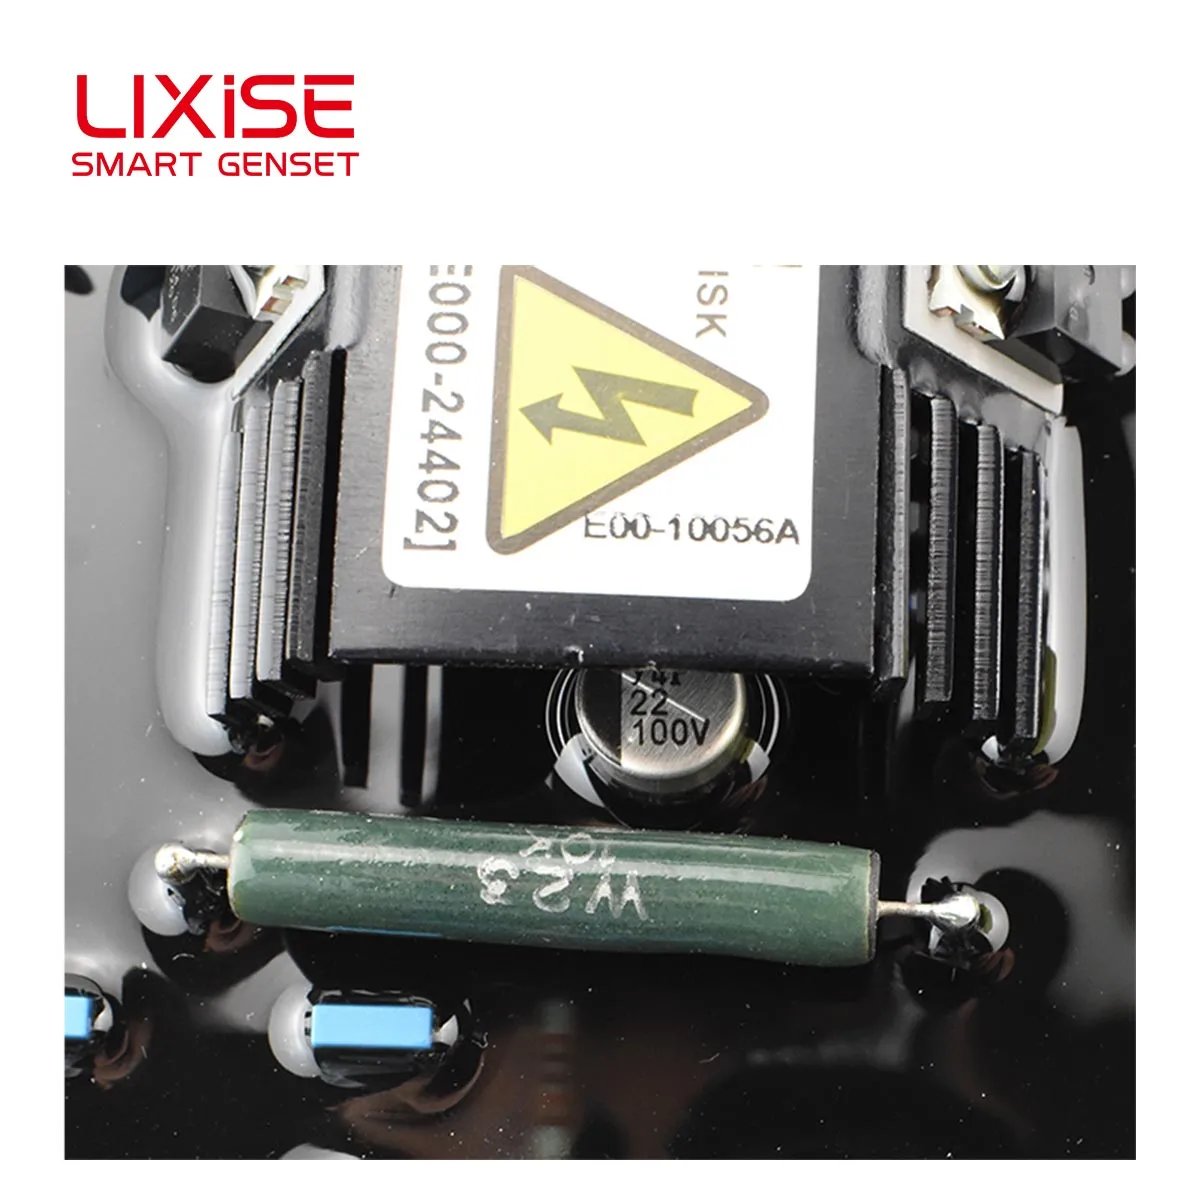 SX440 Brushless 3 Phase Generator Automatic Voltage Regulator